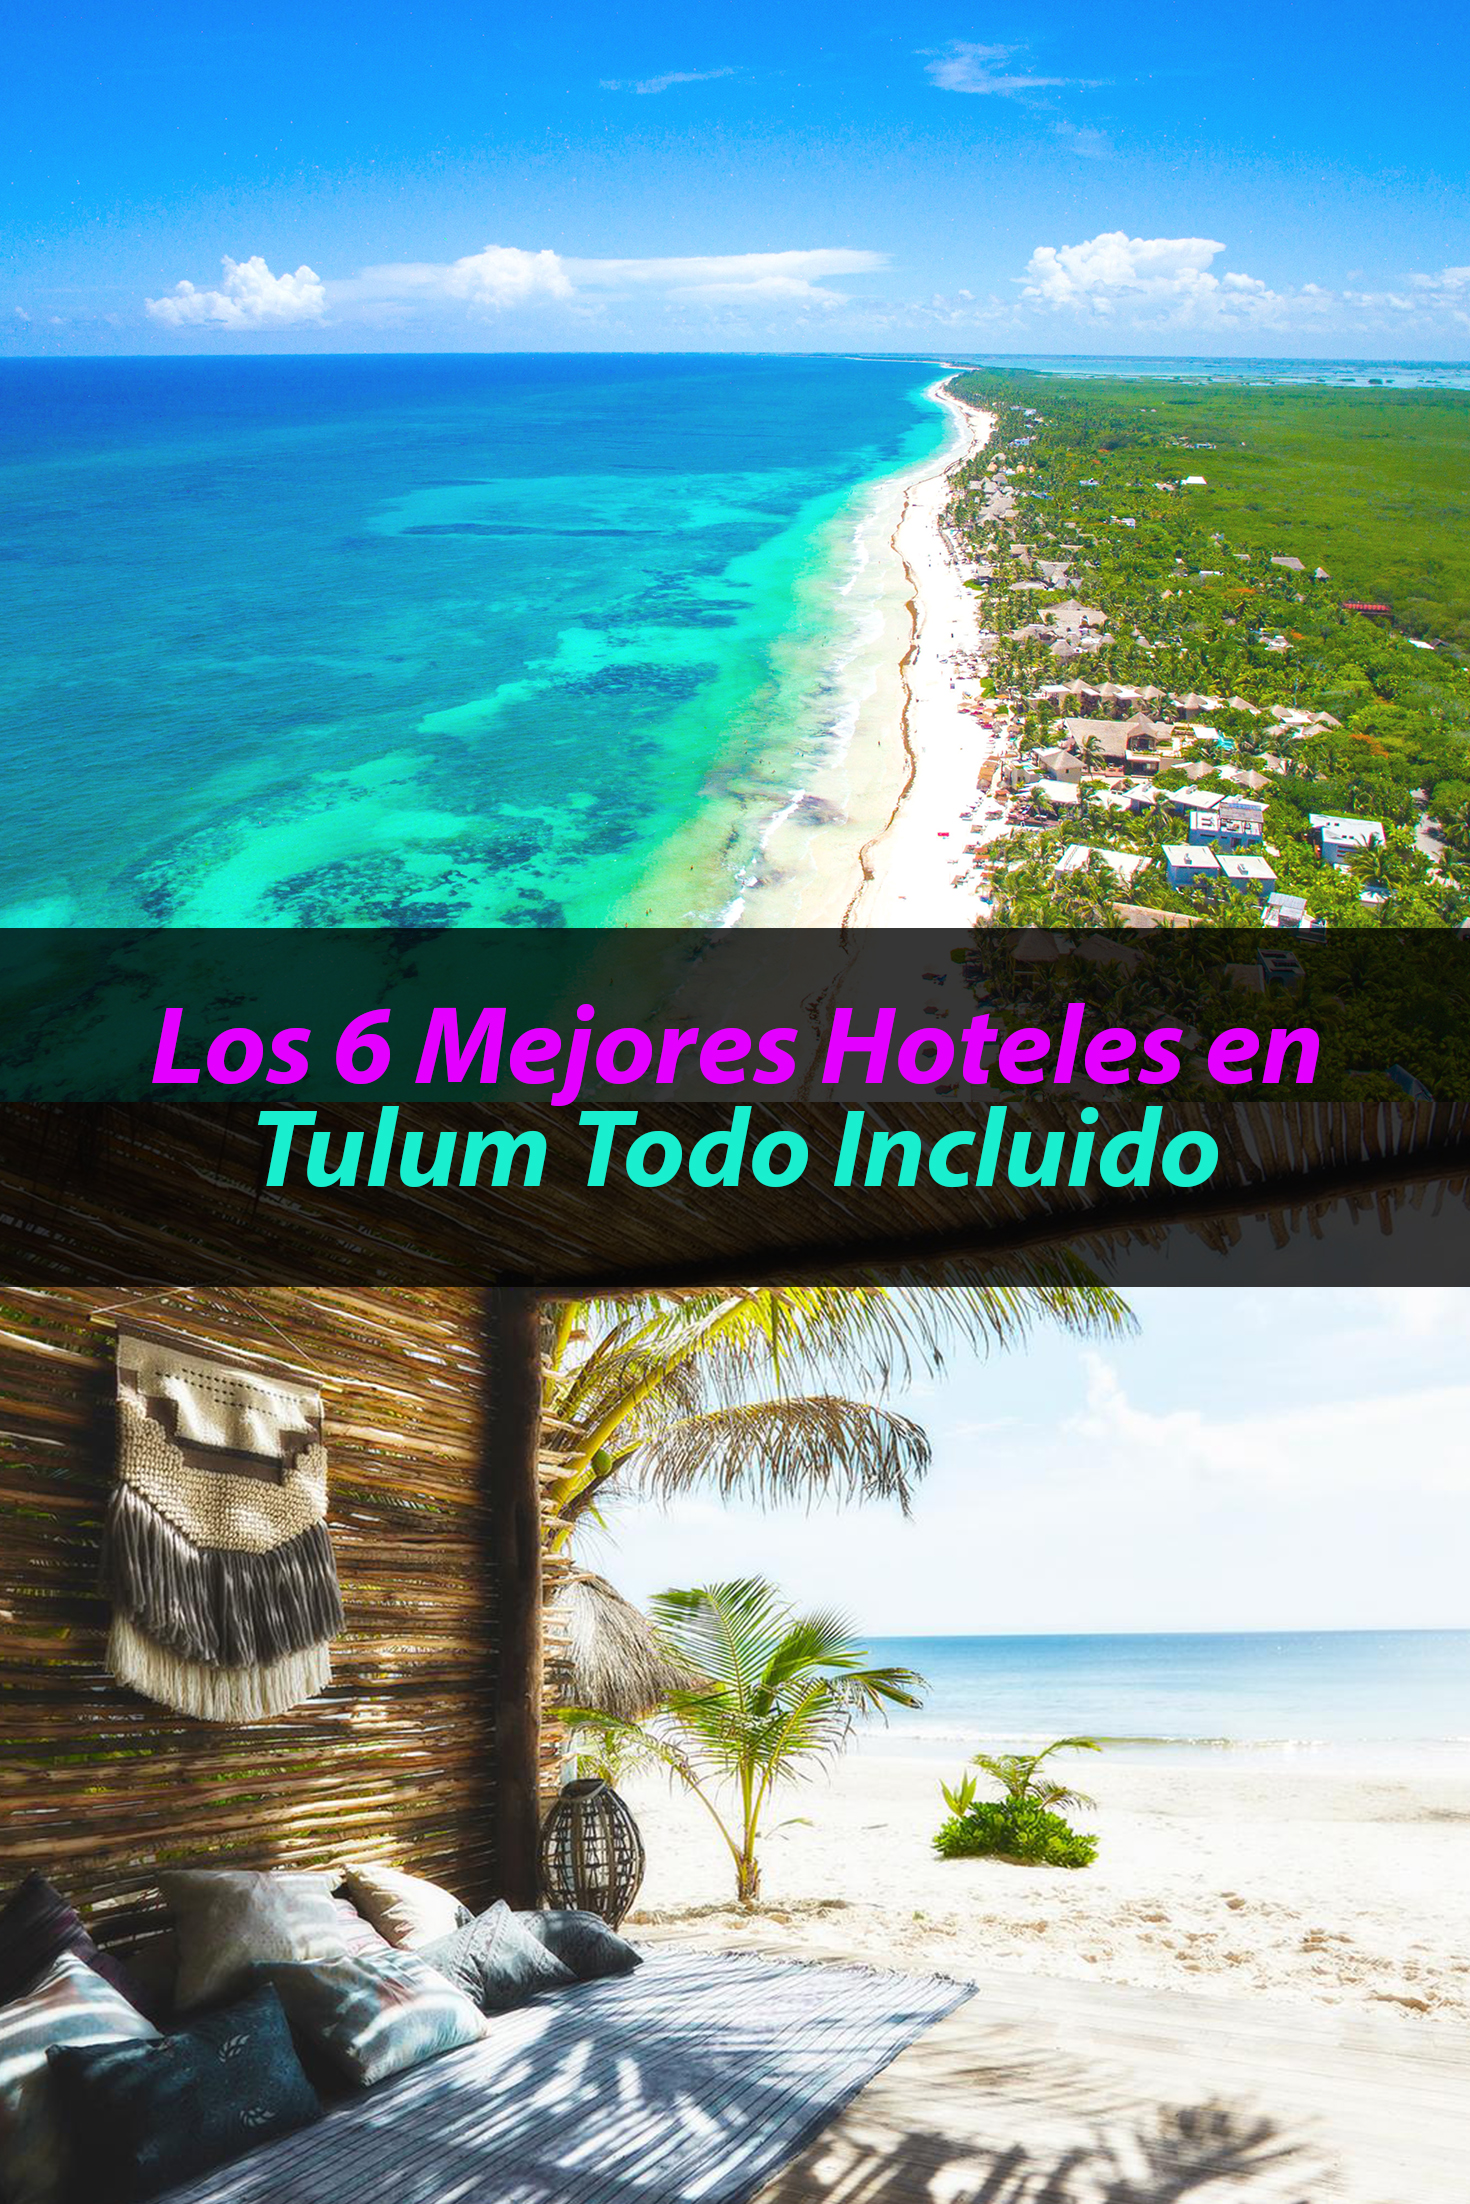 Los 6 mejores hoteles en Tulum todo incluido